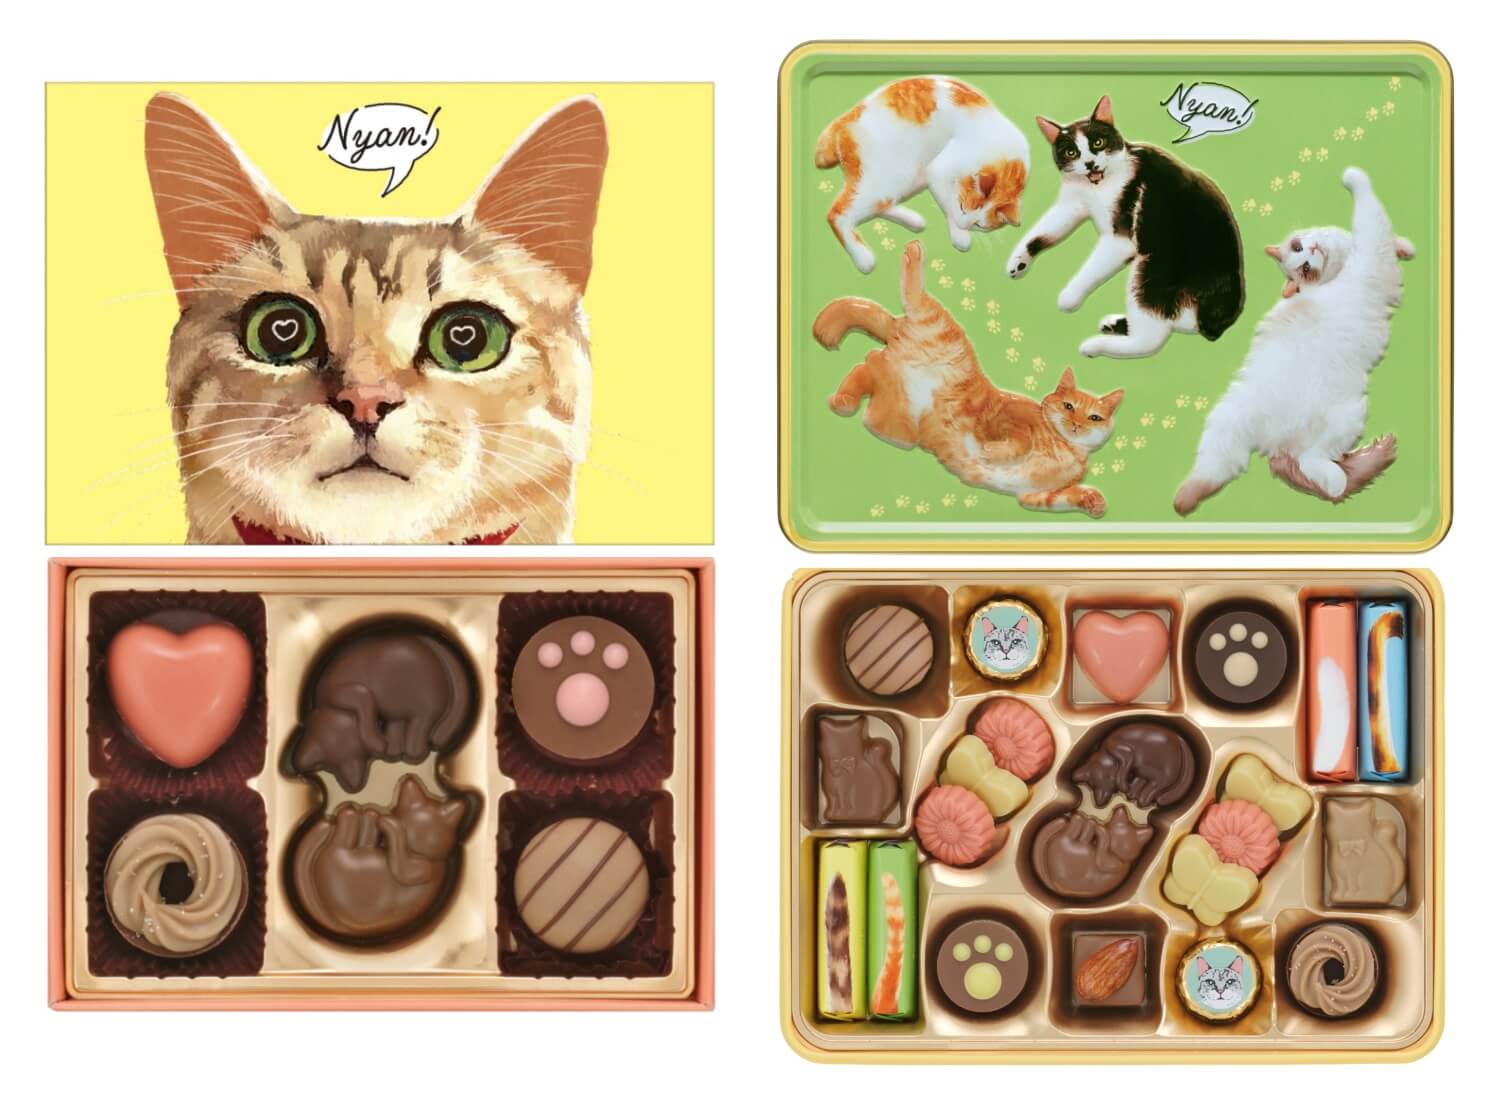 ネコ型やハート型のチョコレートが入った「にゃそーてっどチョコレート」 by メリーチョコレート